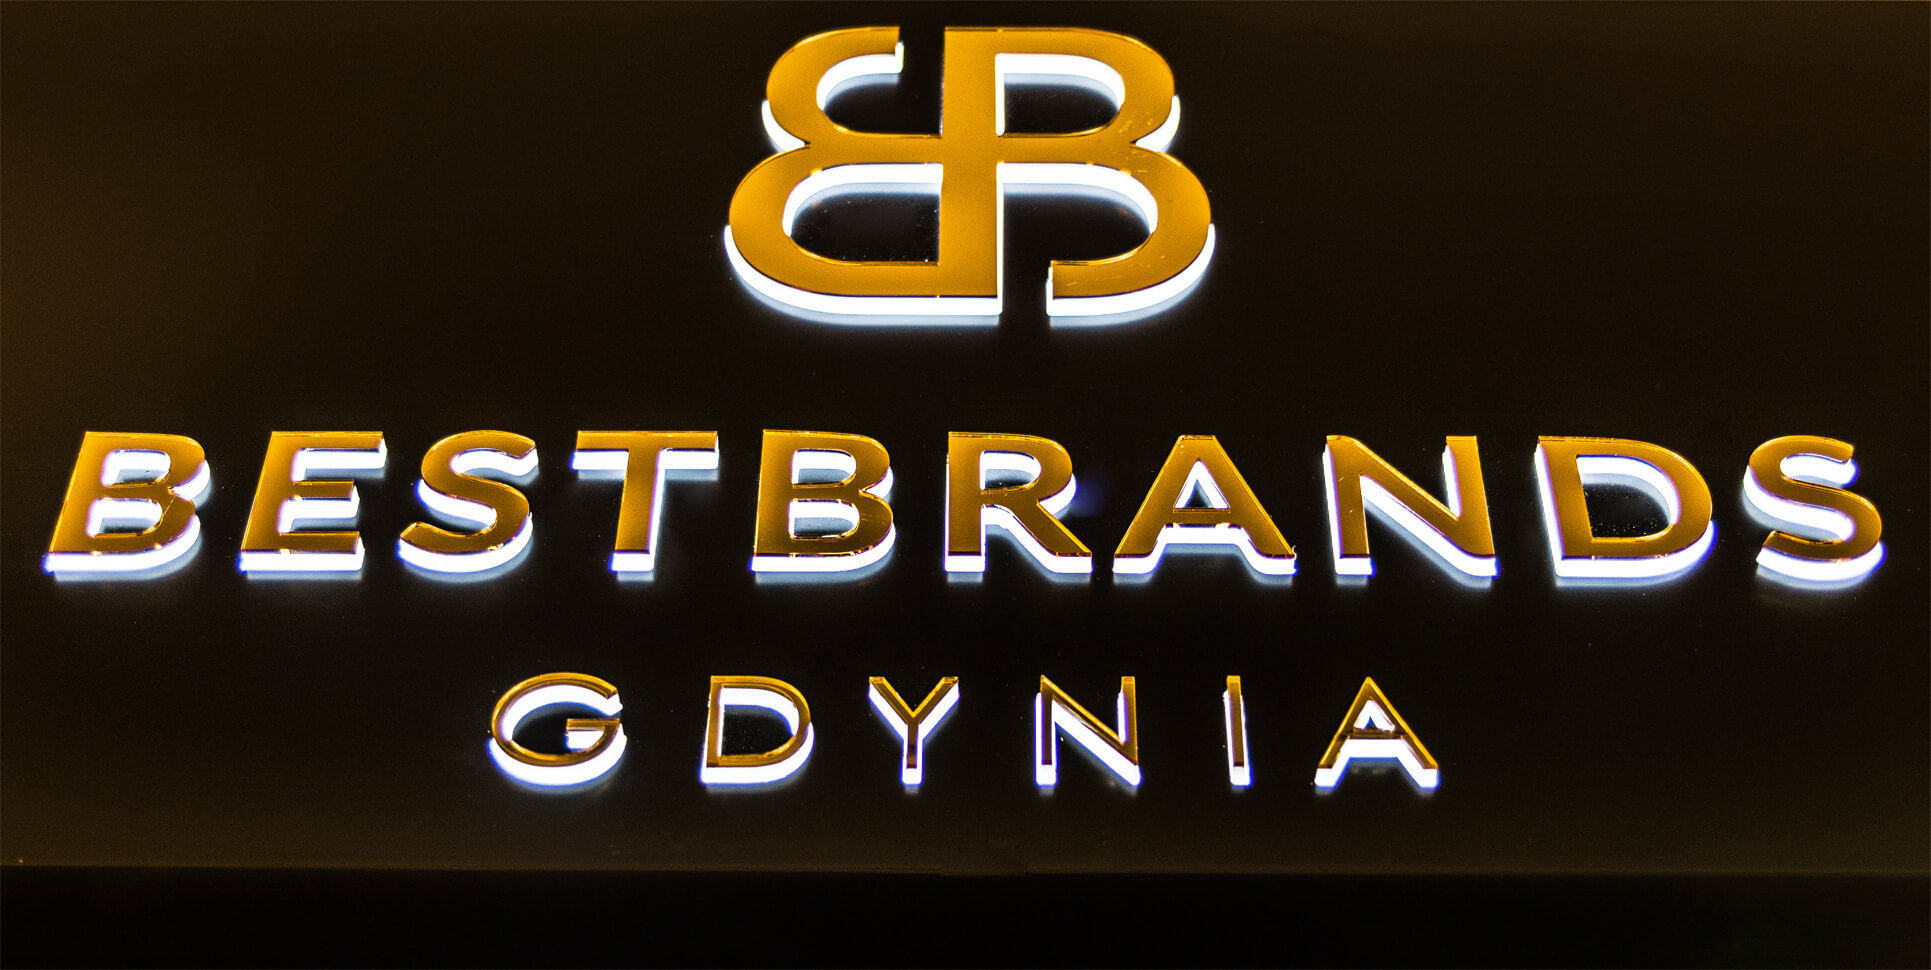 Bestbrands Gdynia - Bestbrands Gdynia - cofre publicitario luminoso colocado sobre la entrada